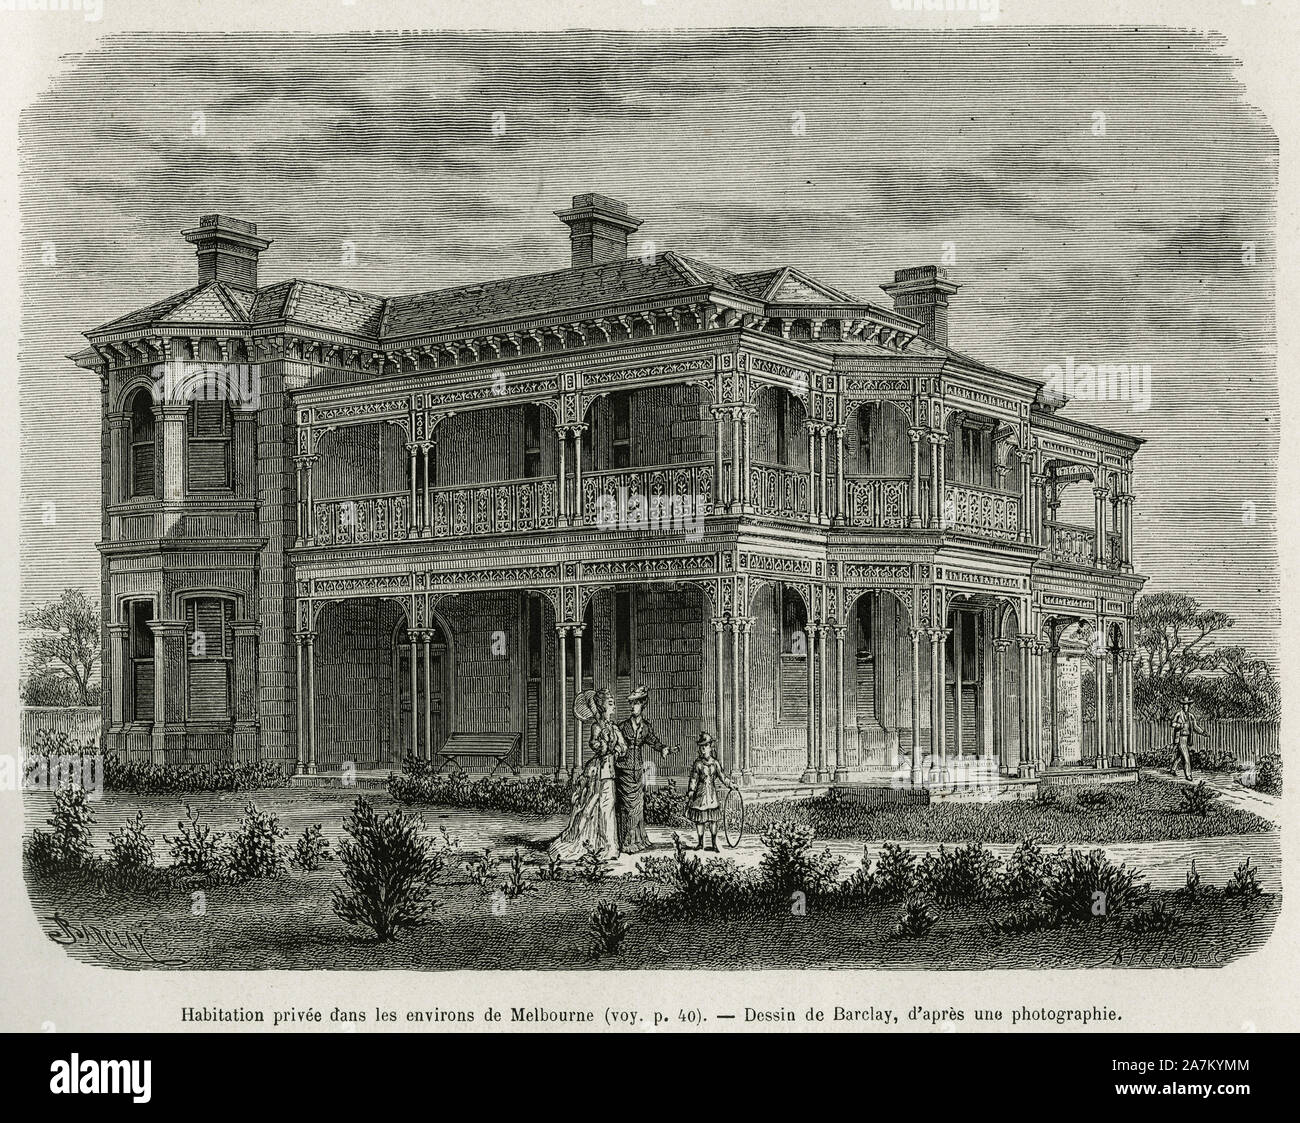 Une habitation privee dans les environs de Melbourne, gravure de Barclay, pour illustrer le recit six mois en Australie, par Desire Charnay, charge de Stock Photo